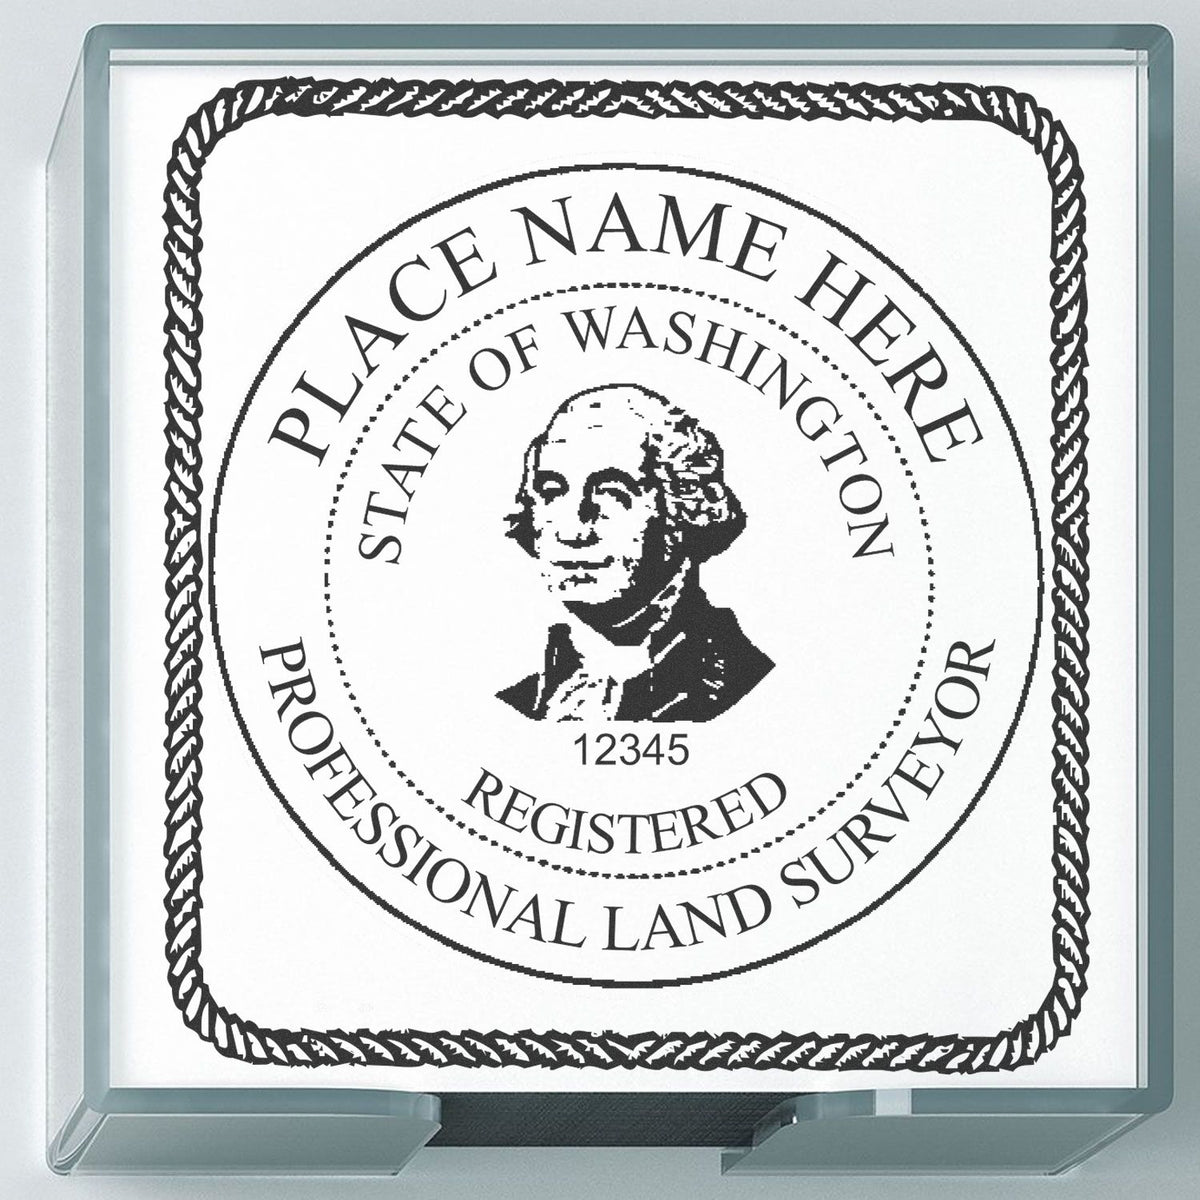 Washington Land Surveyor Seal Stamp In Use Photo